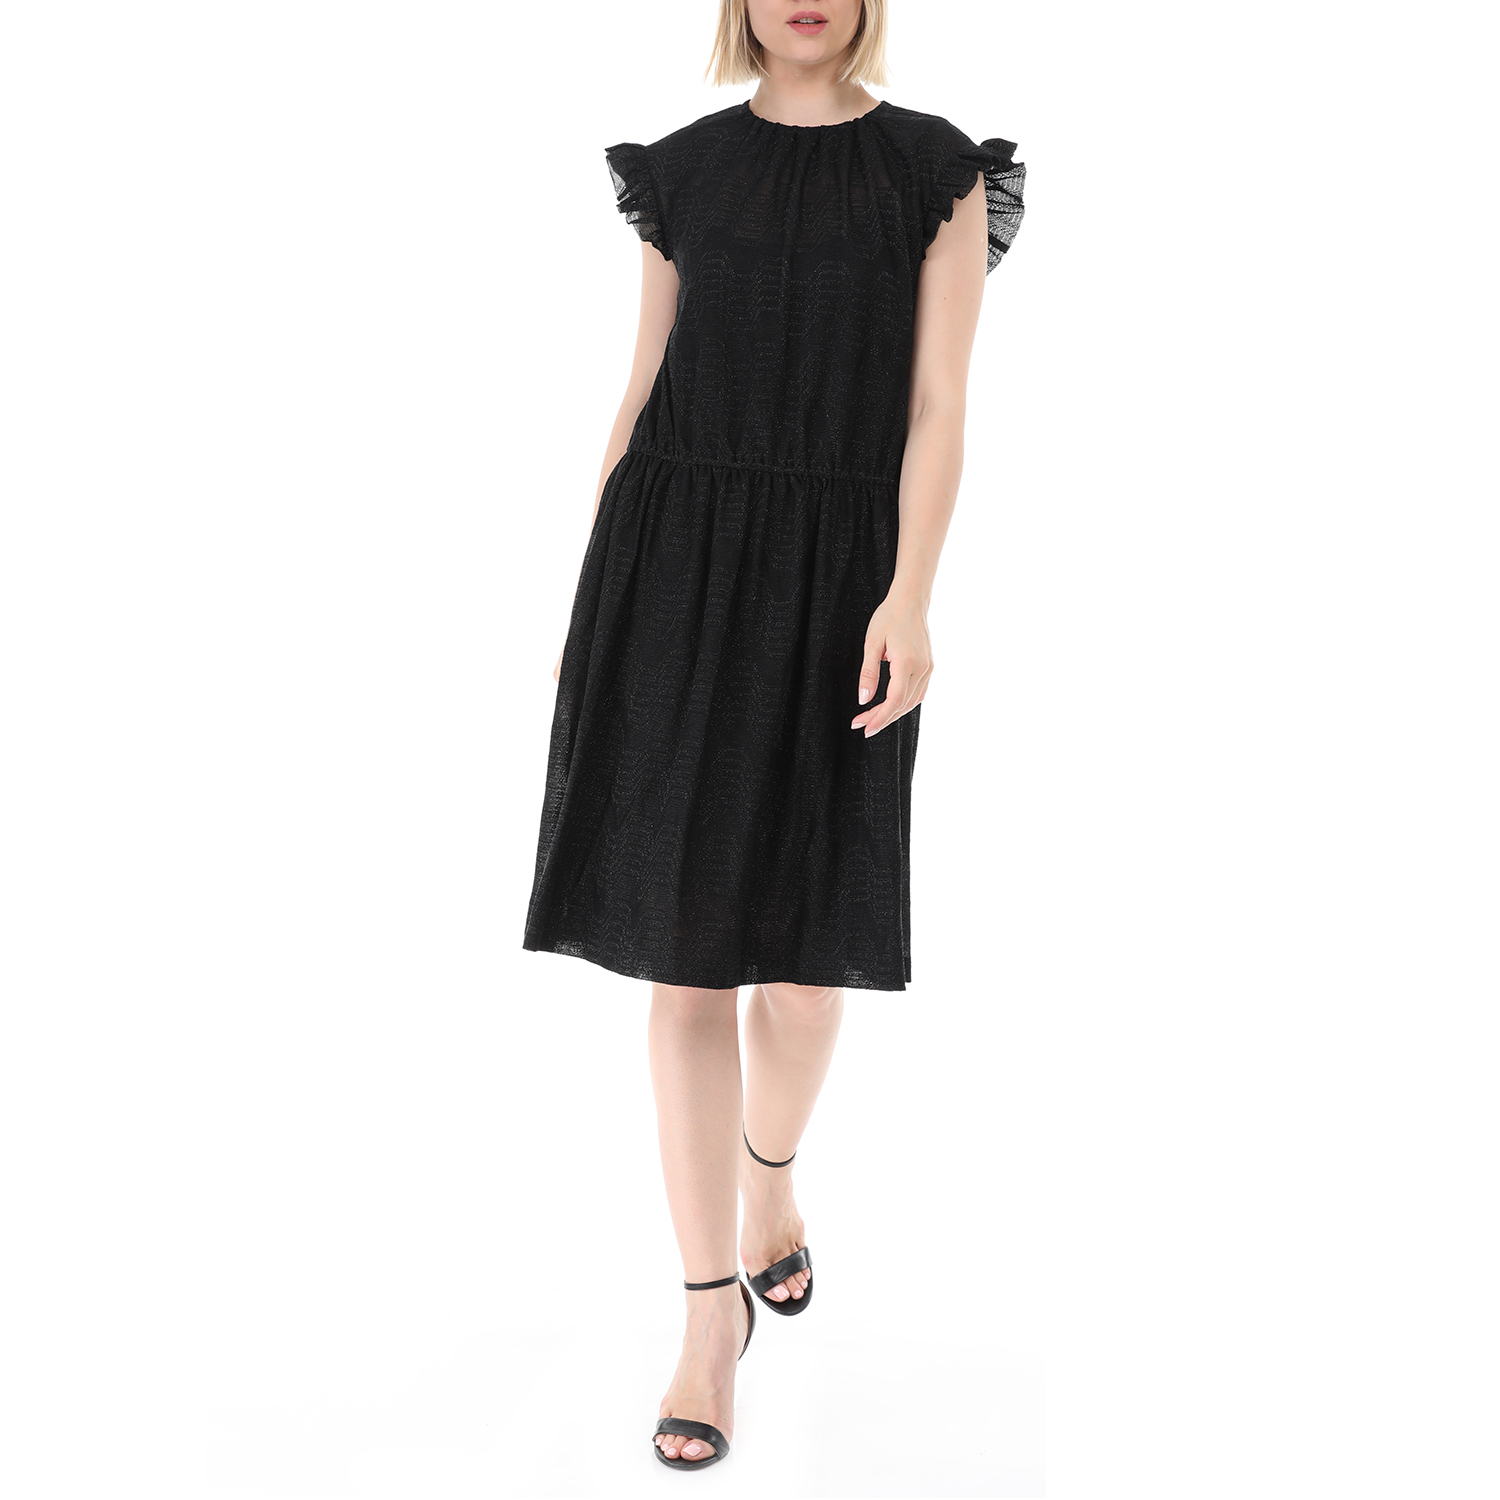 Γυναικεία/Ρούχα/Φορέματα/Μίνι PRE-MISSONI - Γυναικείο mini φόρεμα PRE-MISSONI μαύρο ασημί